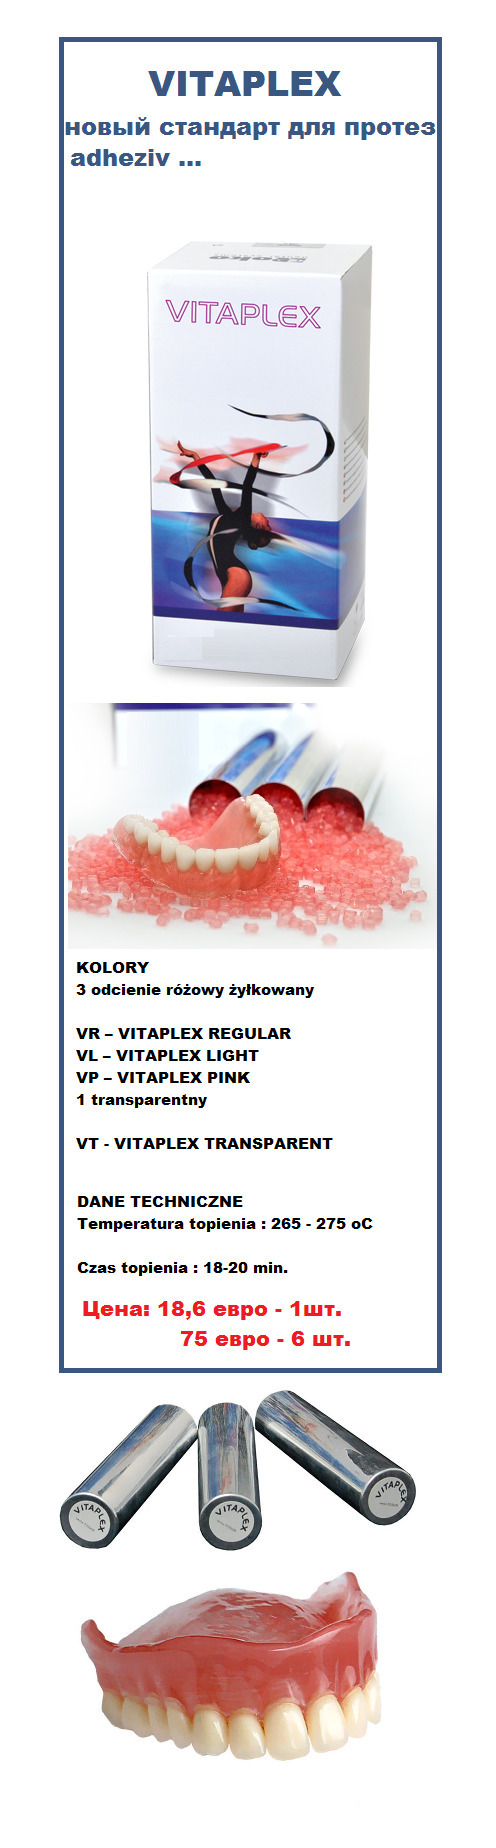 Массы зуботехническиe - Rematitan, Gilvest, Bego.... для пресс-керамики, Vitaplex, новый стандарт качества Zooble.com.ua